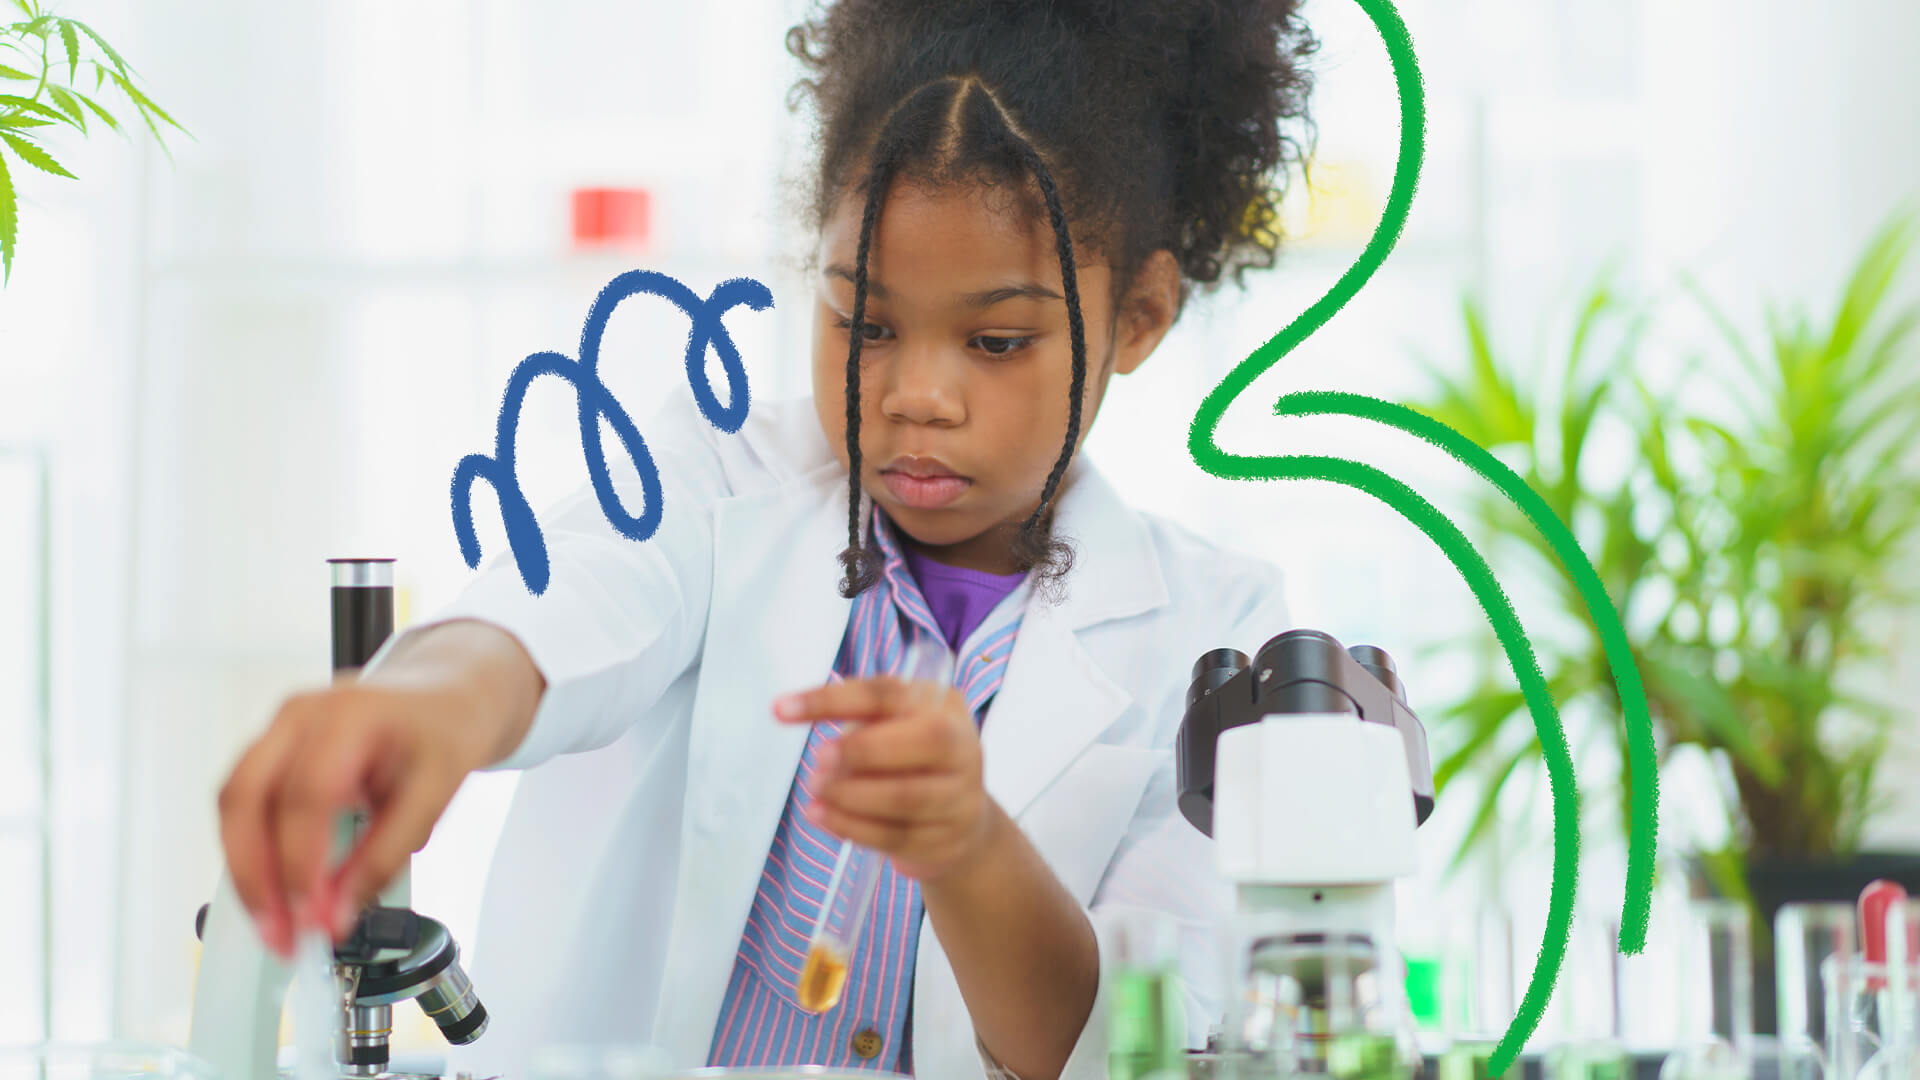 Uma menina negra mexe em tubos de ensaio em um laboratório. A imagem ilustra uma matéria sobre meninas e mulheres na ciência